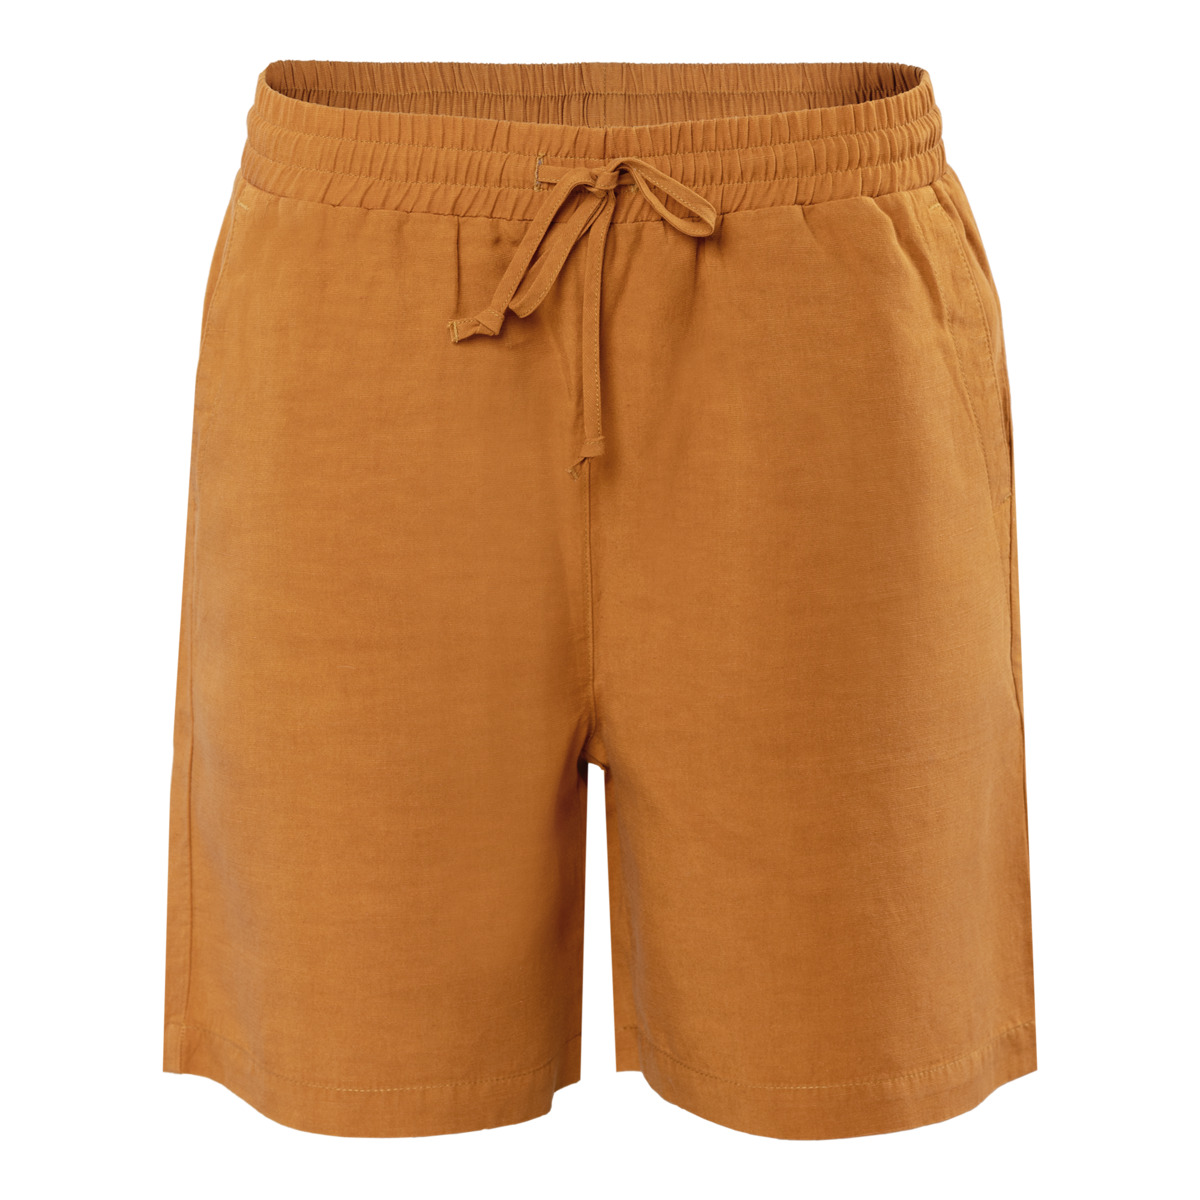 Brown Bermuda shorts, ORSINA